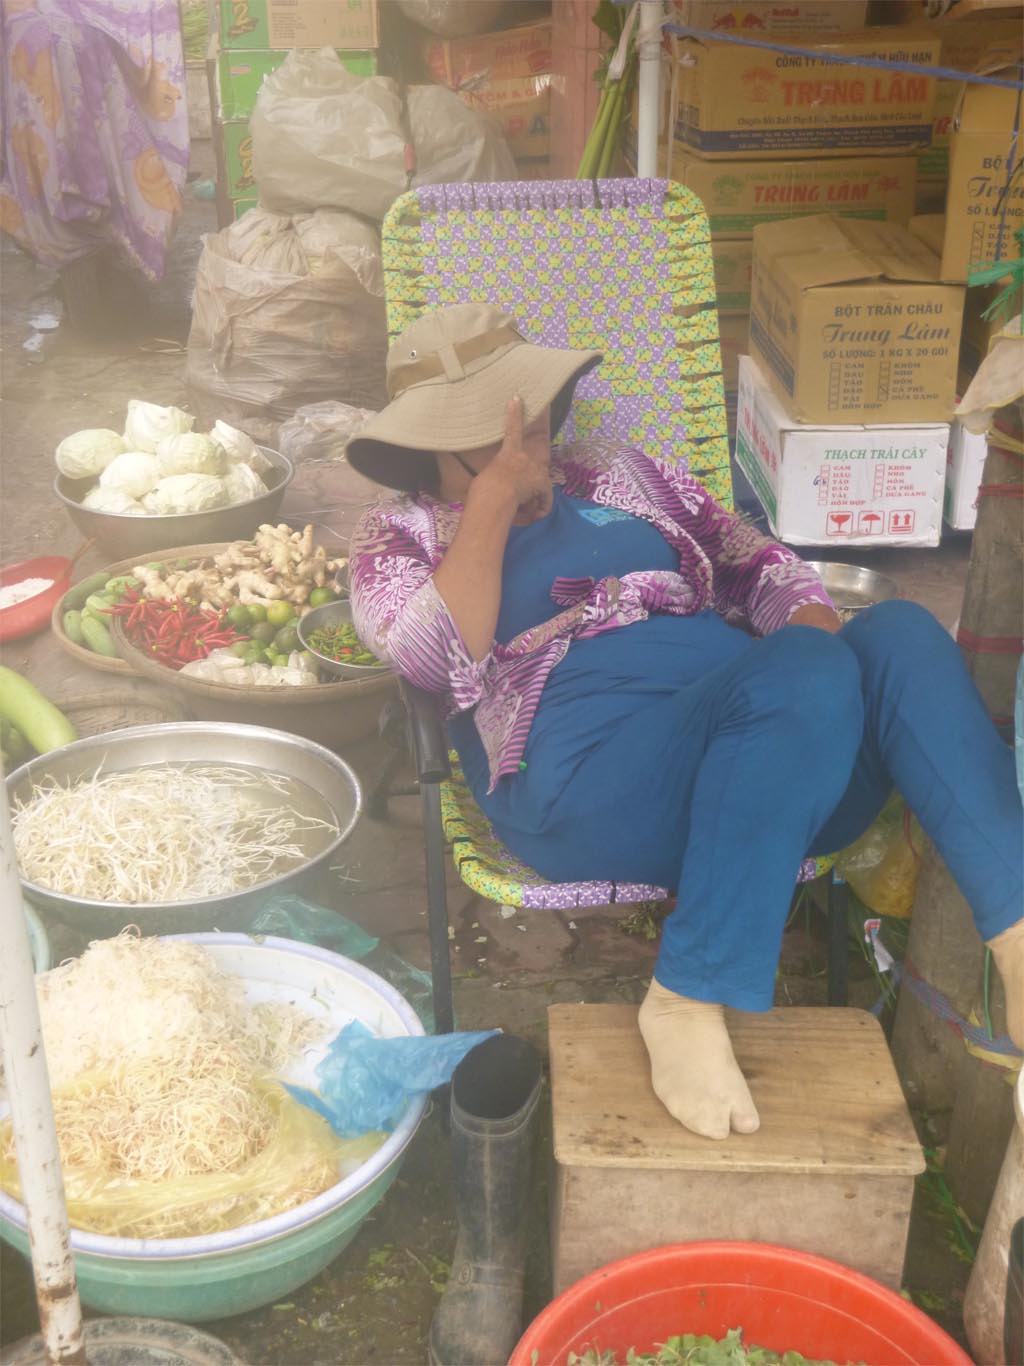 A sleepy market lady